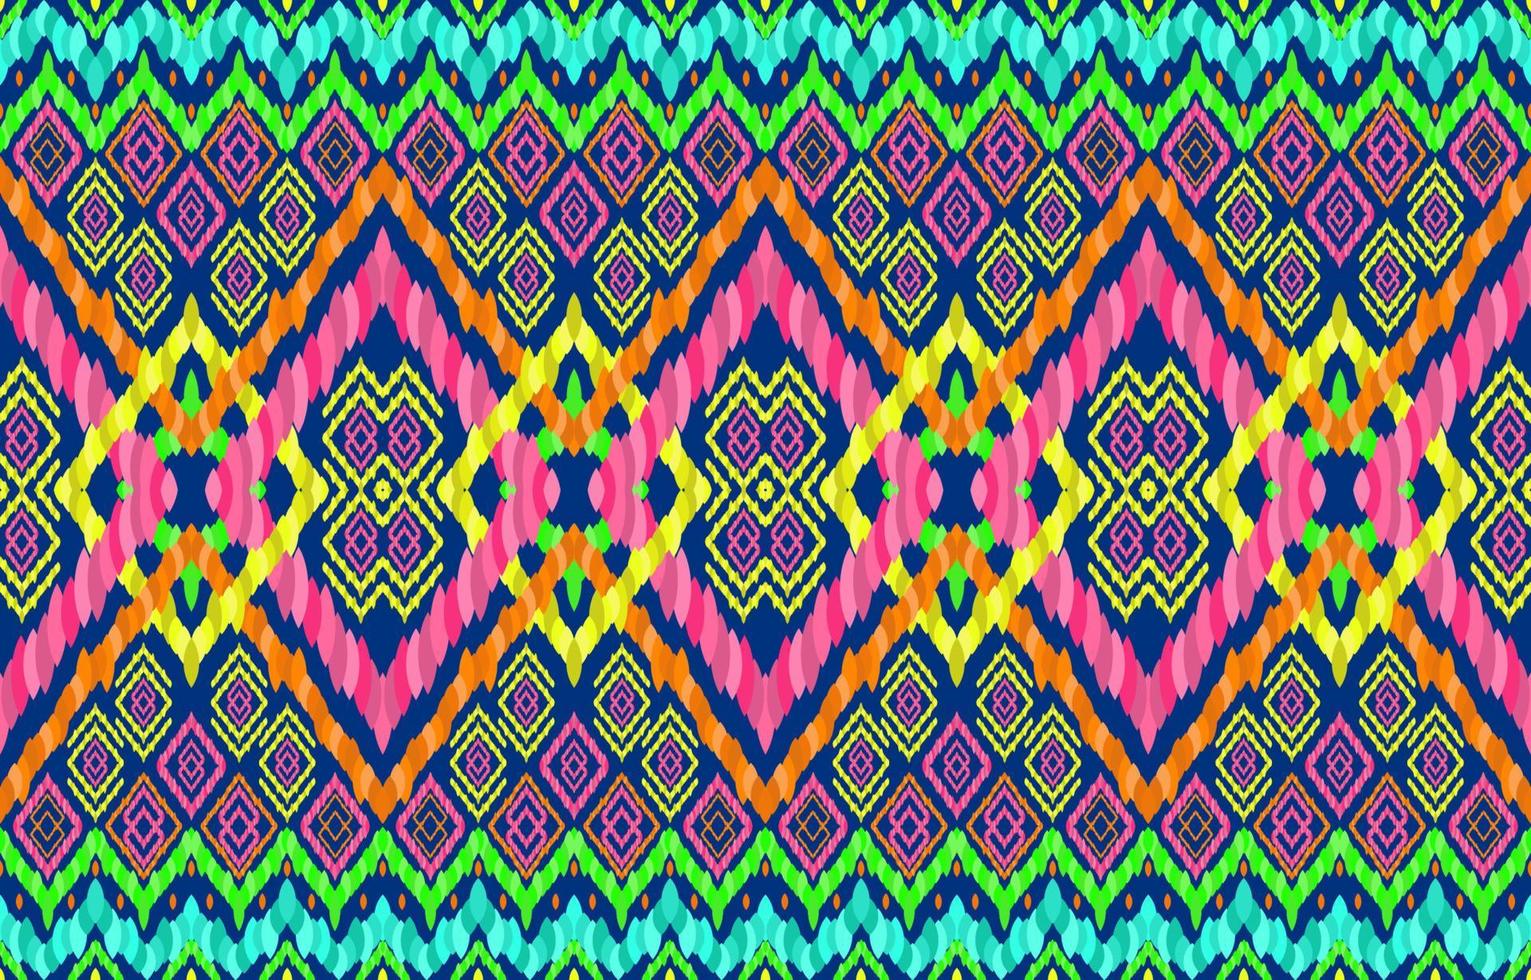 patrones sin fisuras de ikat navajo indio maya africano. la línea geométrica brilla con un fondo de color neón brillante. étnico folk tribal nativo ikat patrón estilo retro. diseño para alfombras de tela de ropa. vector